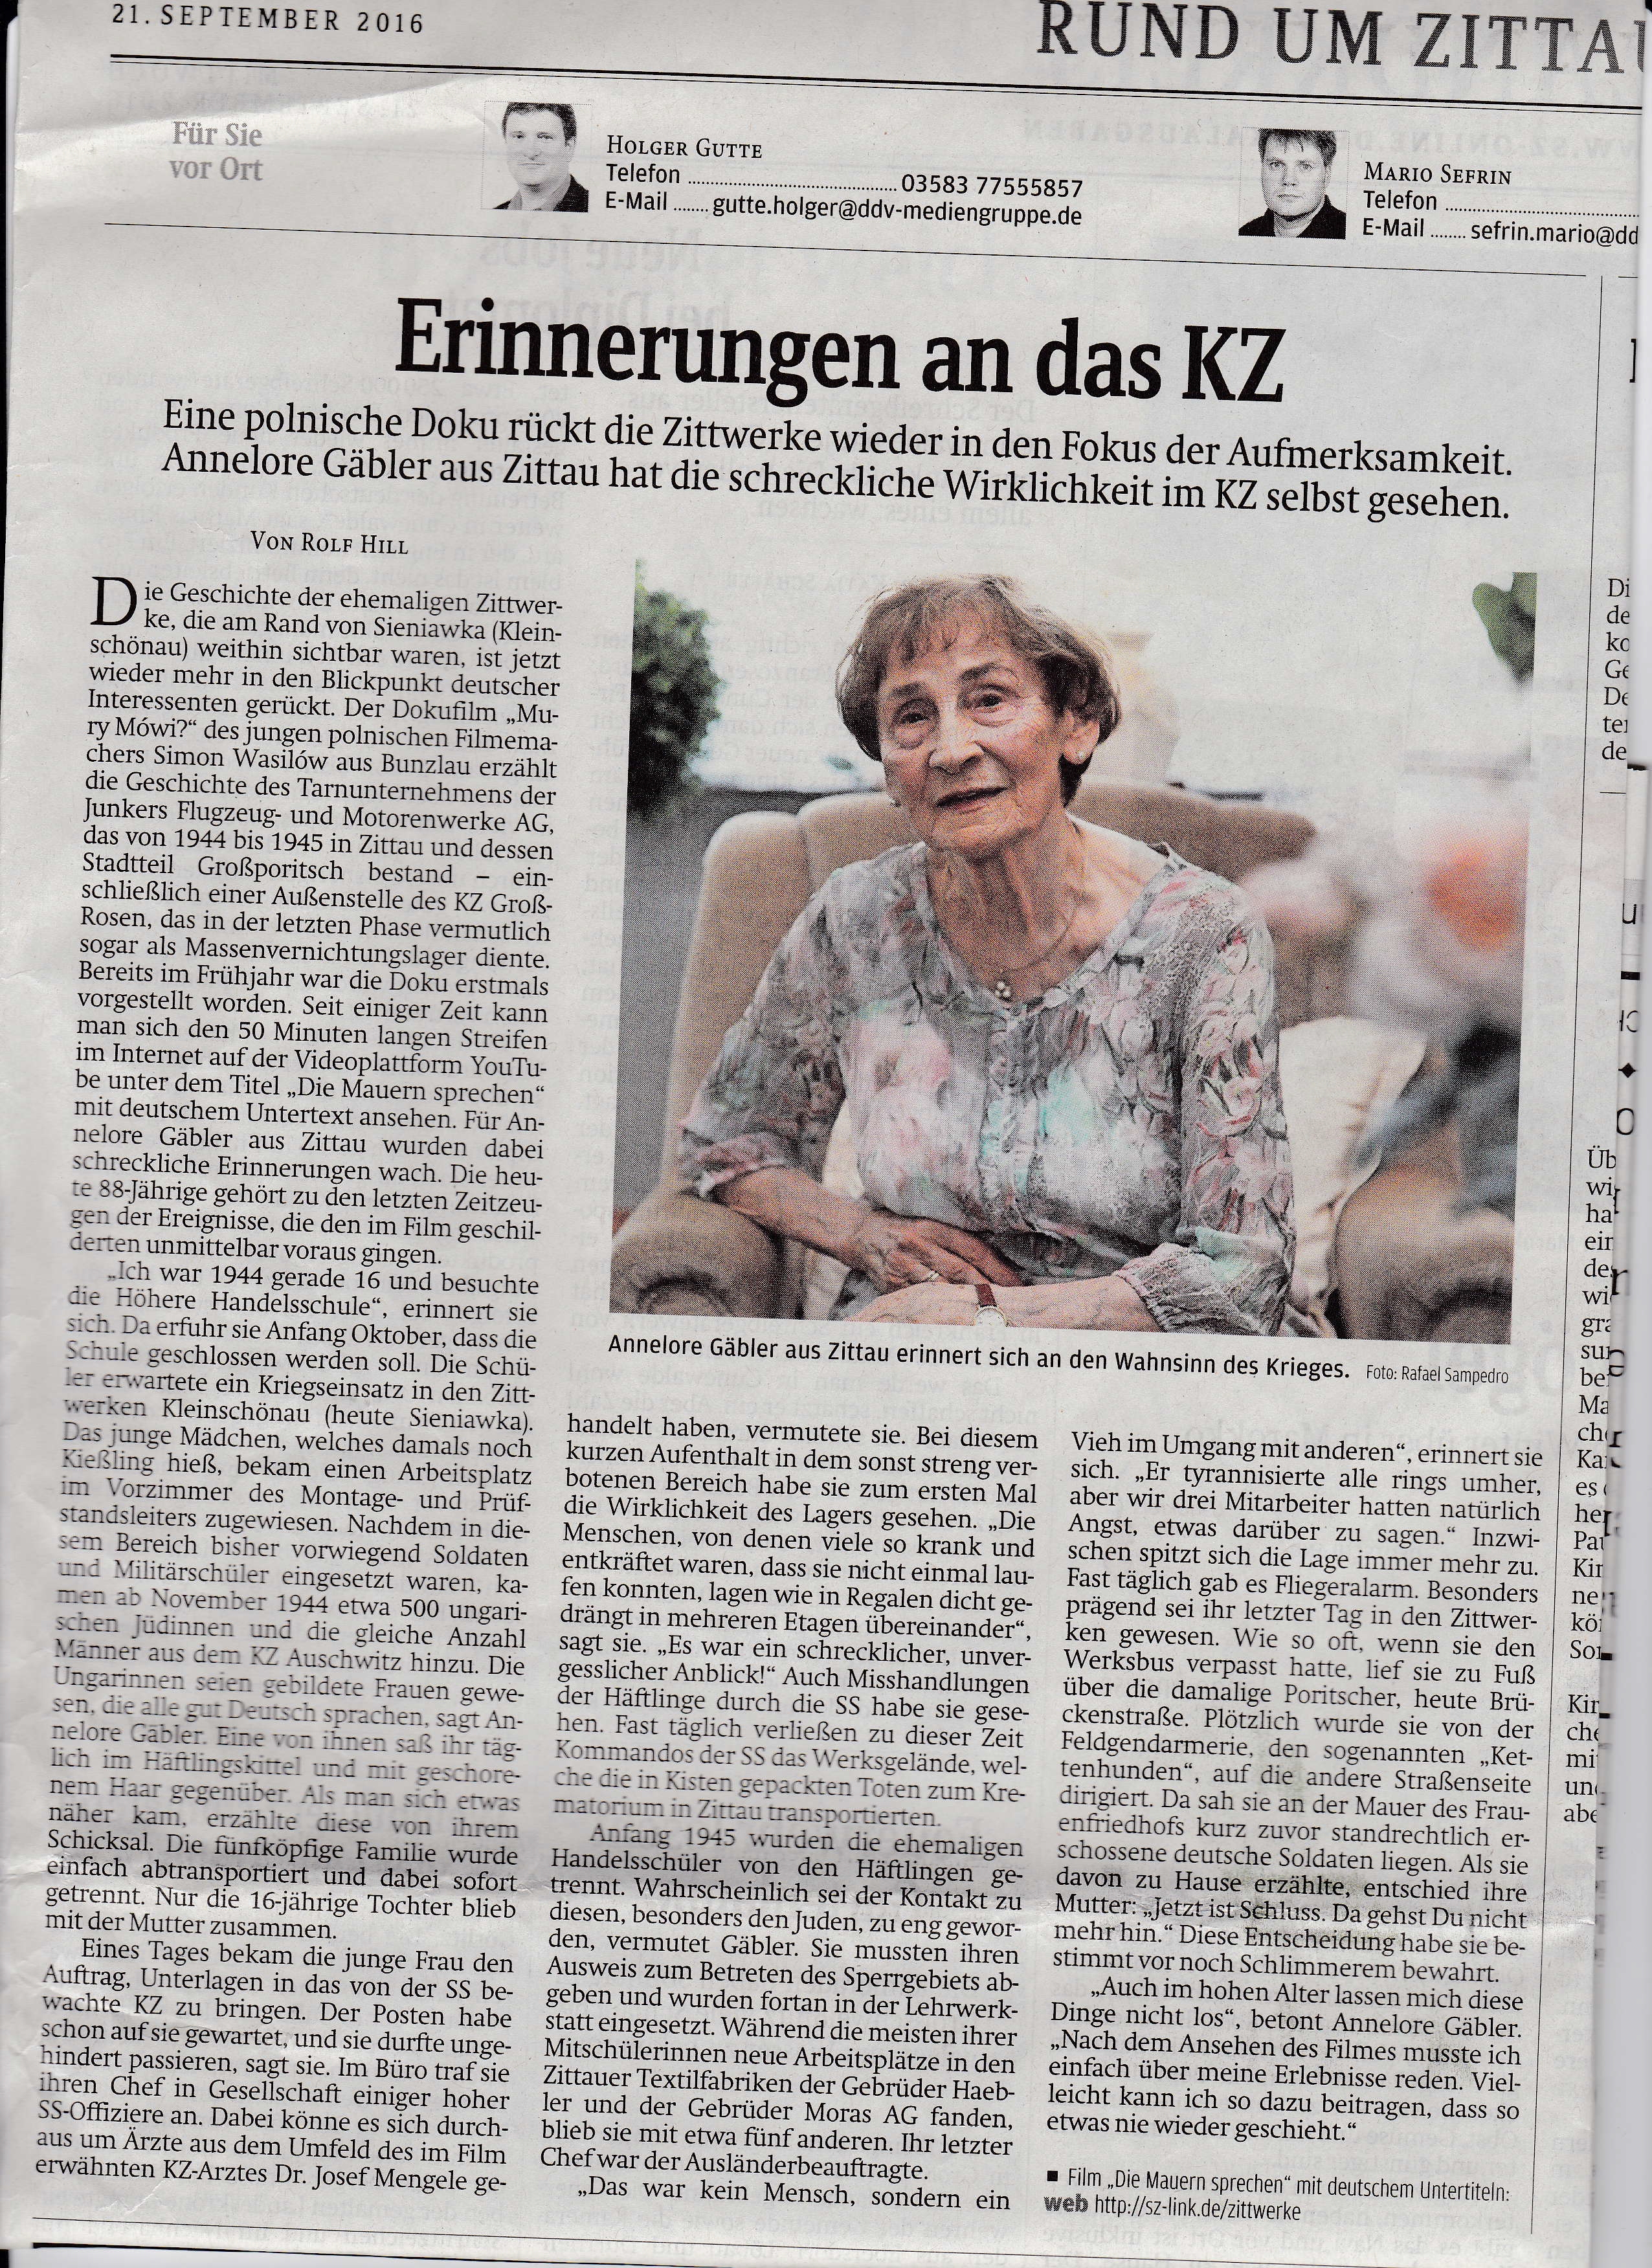 Tekst "Erinnerungen an das KZ" autorstwa Rolf Hill pochodzi z Gazety Saksońskiej (Saechsische Zeitung) 21.09.2016